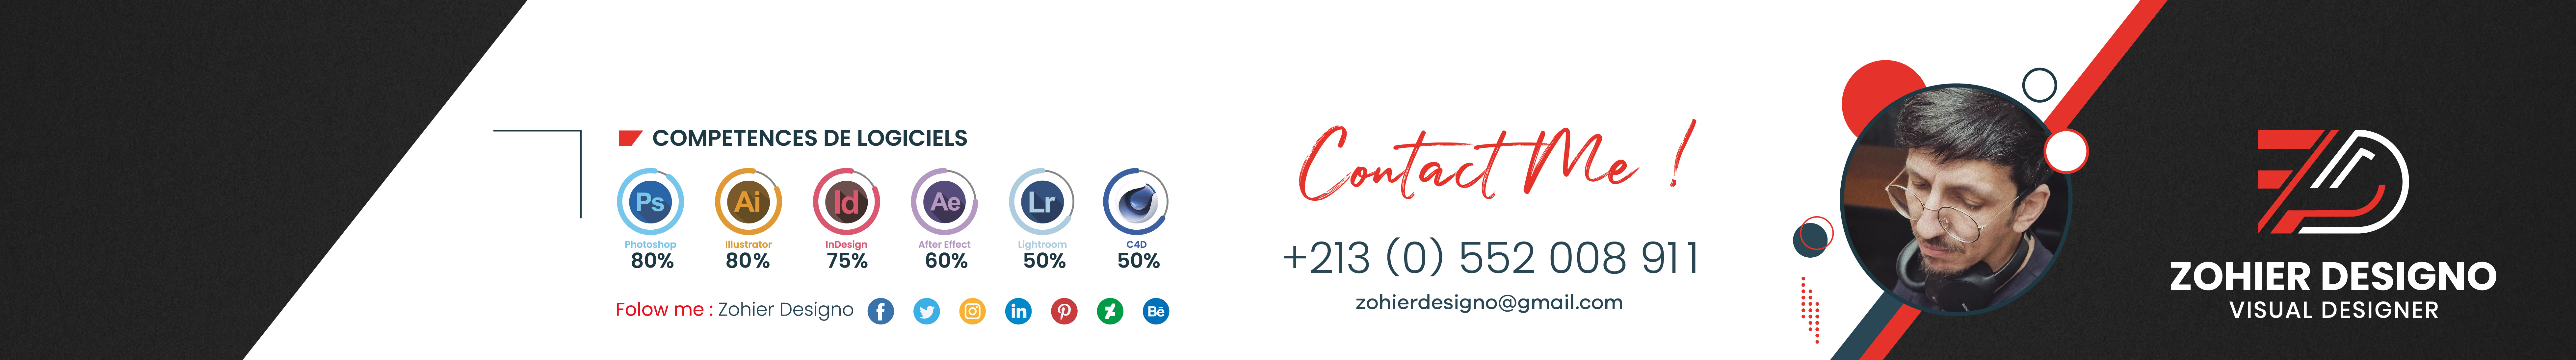 Zohier Designo's profile banner